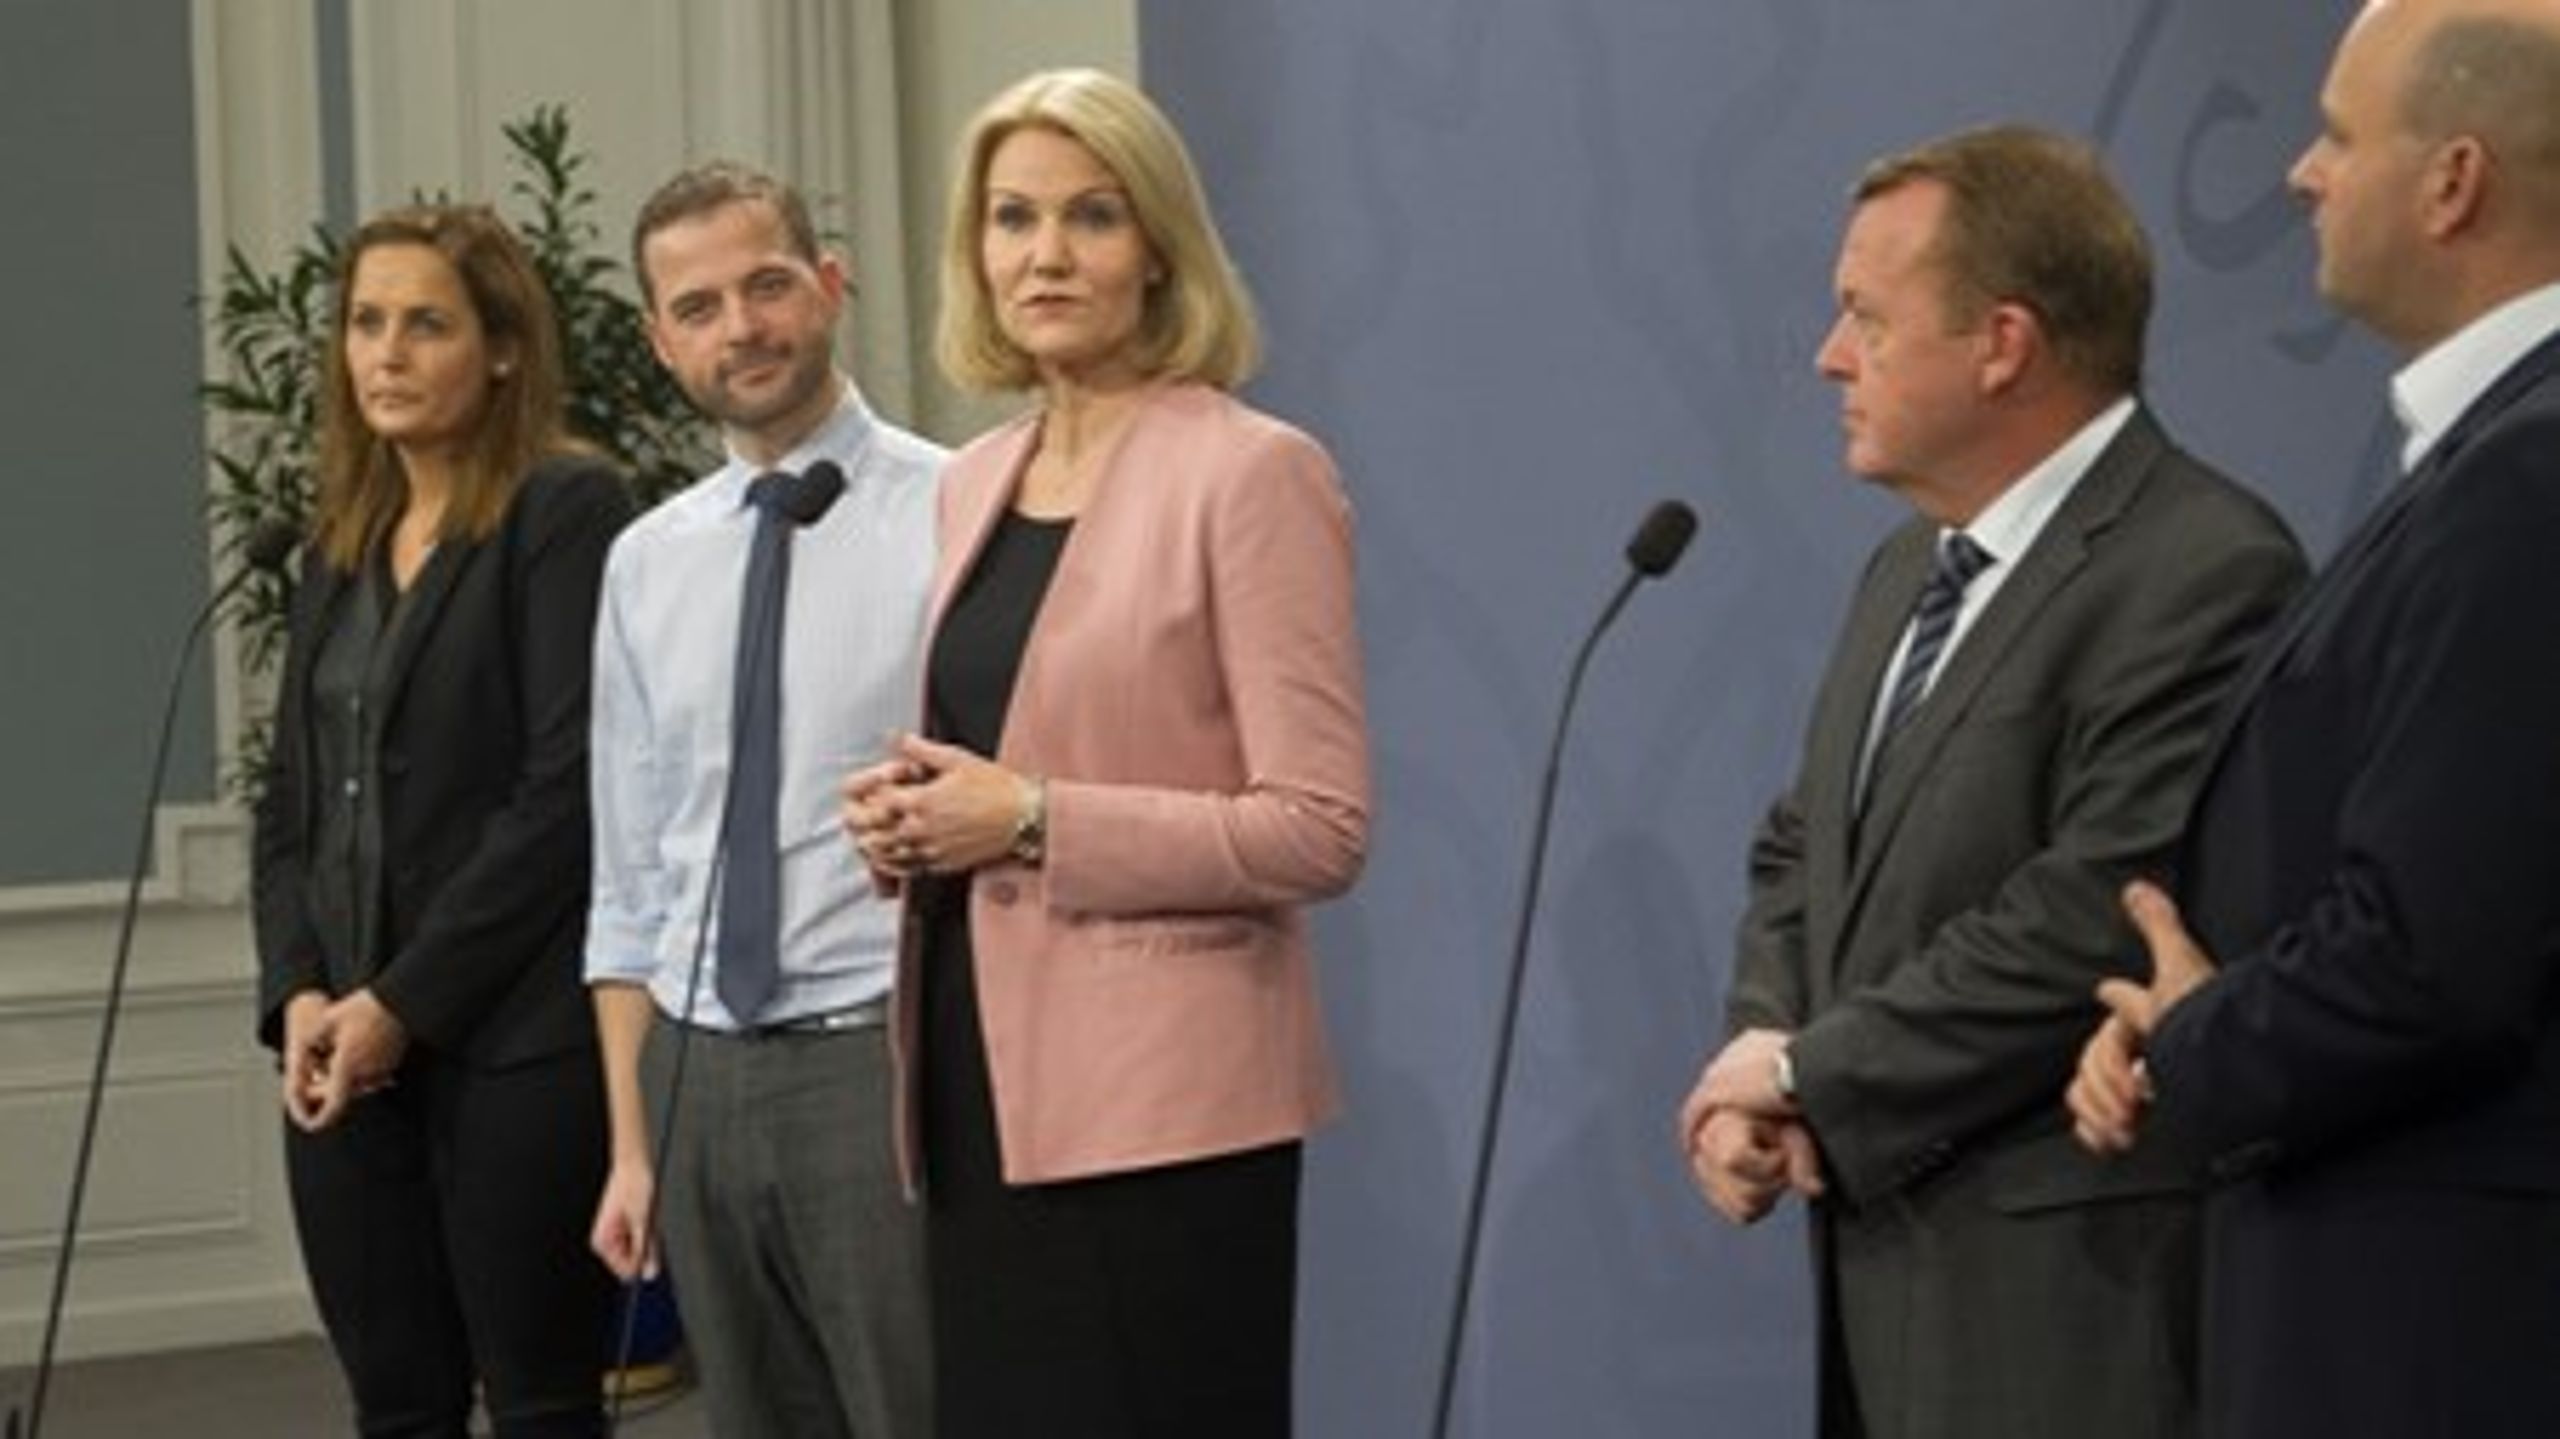 I december indgik Socialdemokraterne, Venstre, Radikale, SF og Konservative en aftale, der sender det danske retsforbehold til folkeafstemning senest i begyndelsen af 2016.